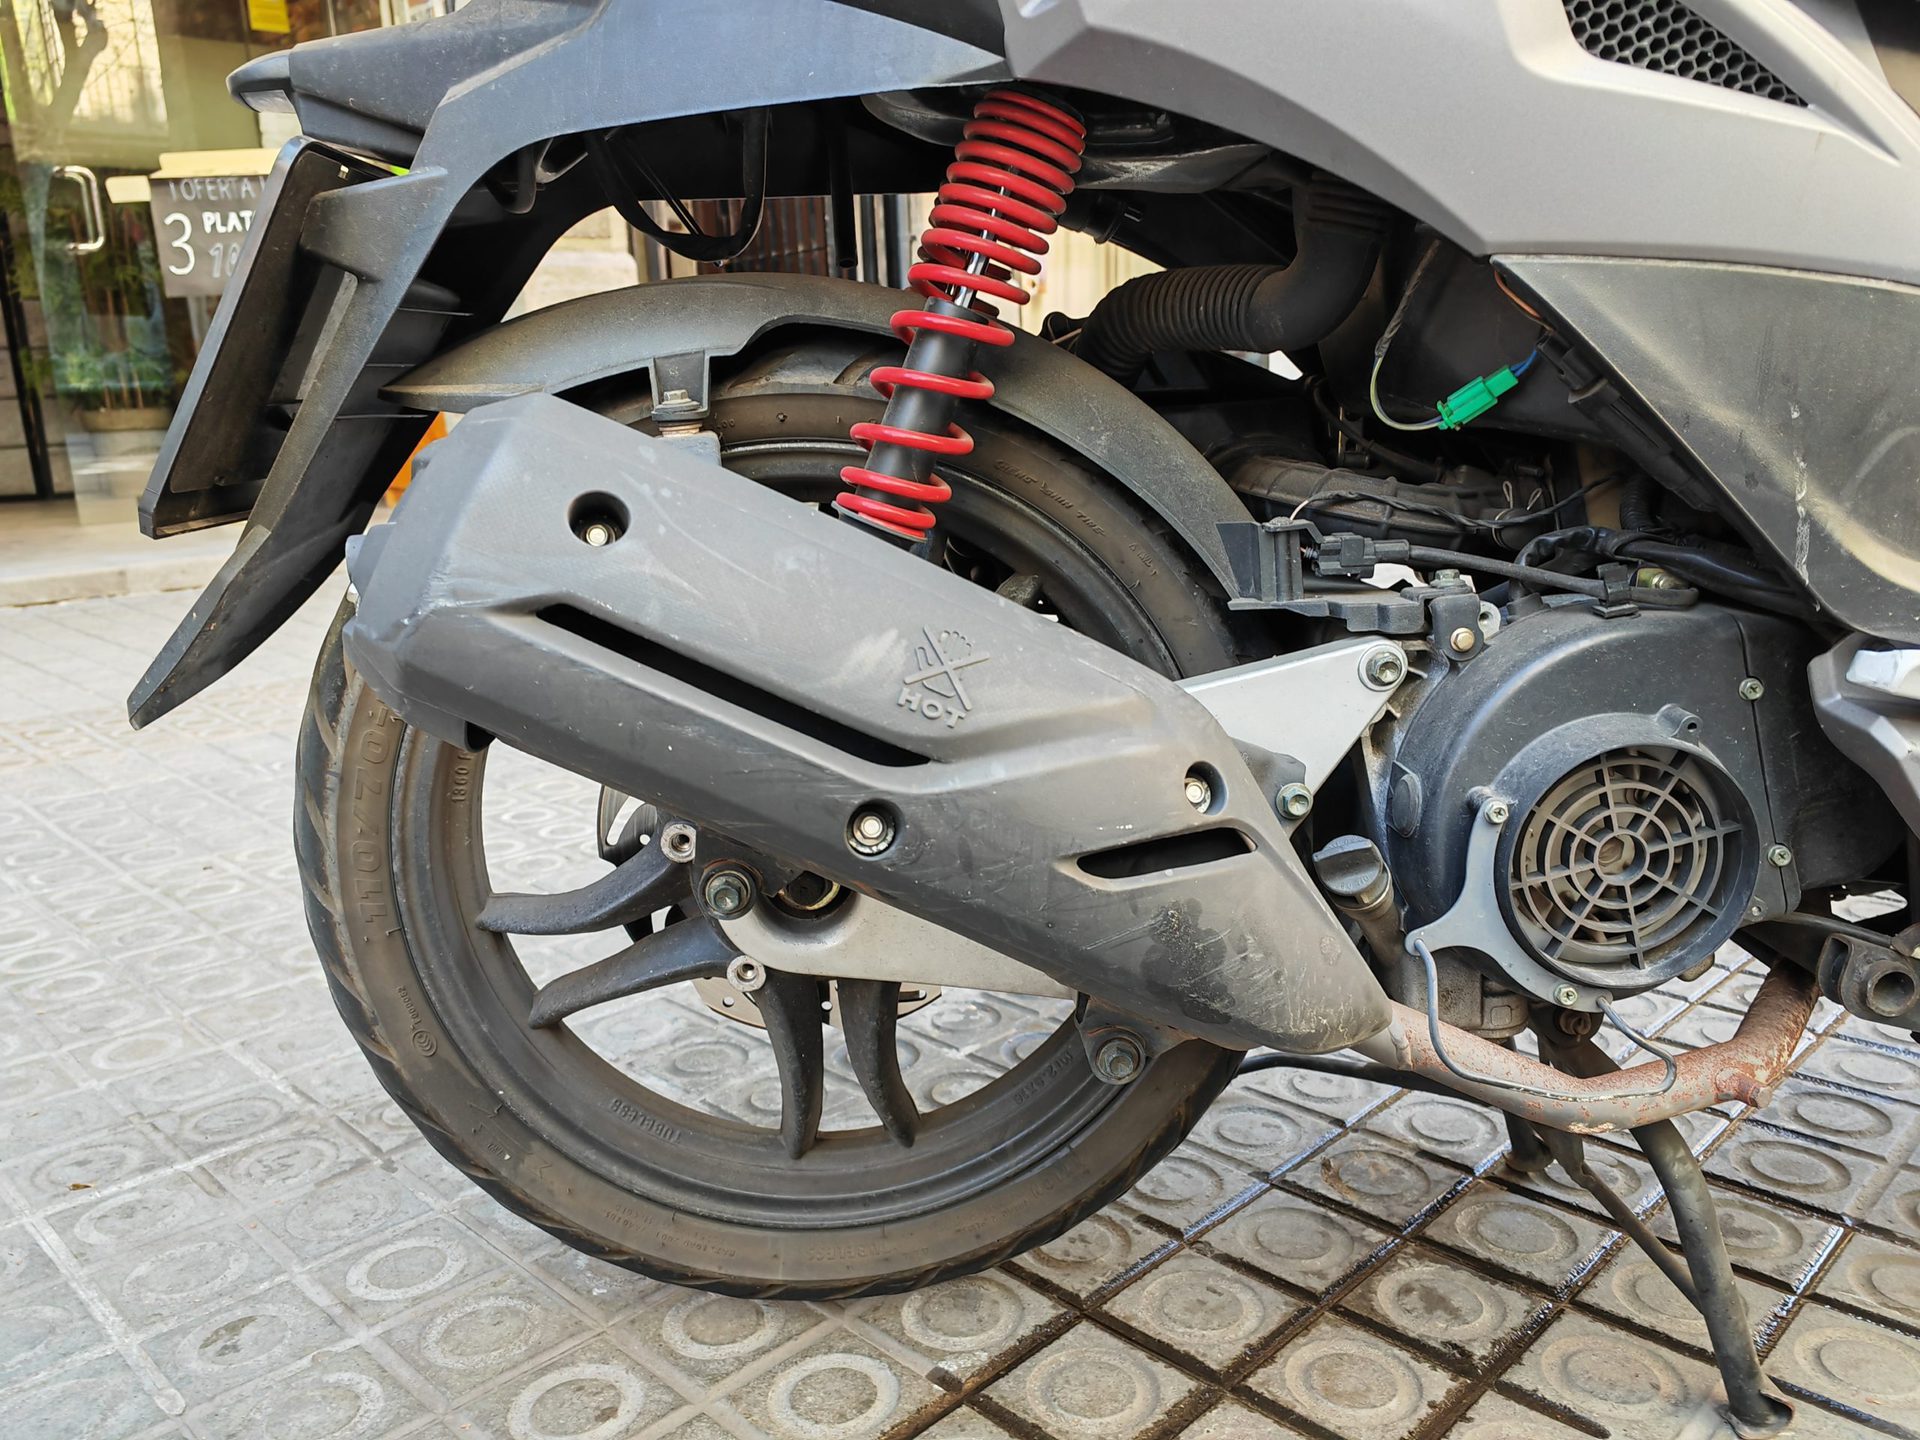 HONOR Magic 4 Pro camera sample motorbike detail